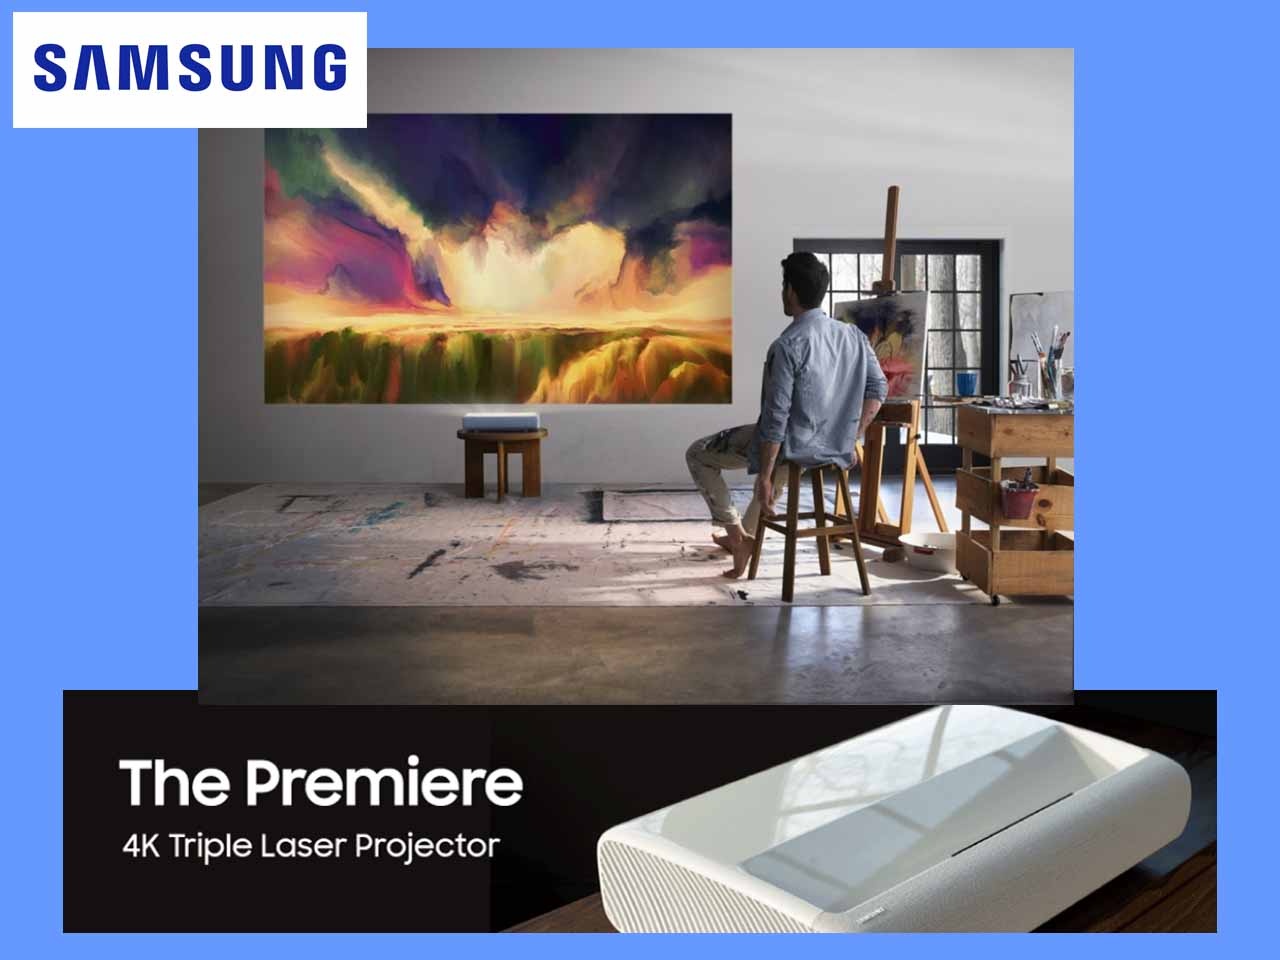 Samsung dévoile le projecteur The Premiere, son téléviseur